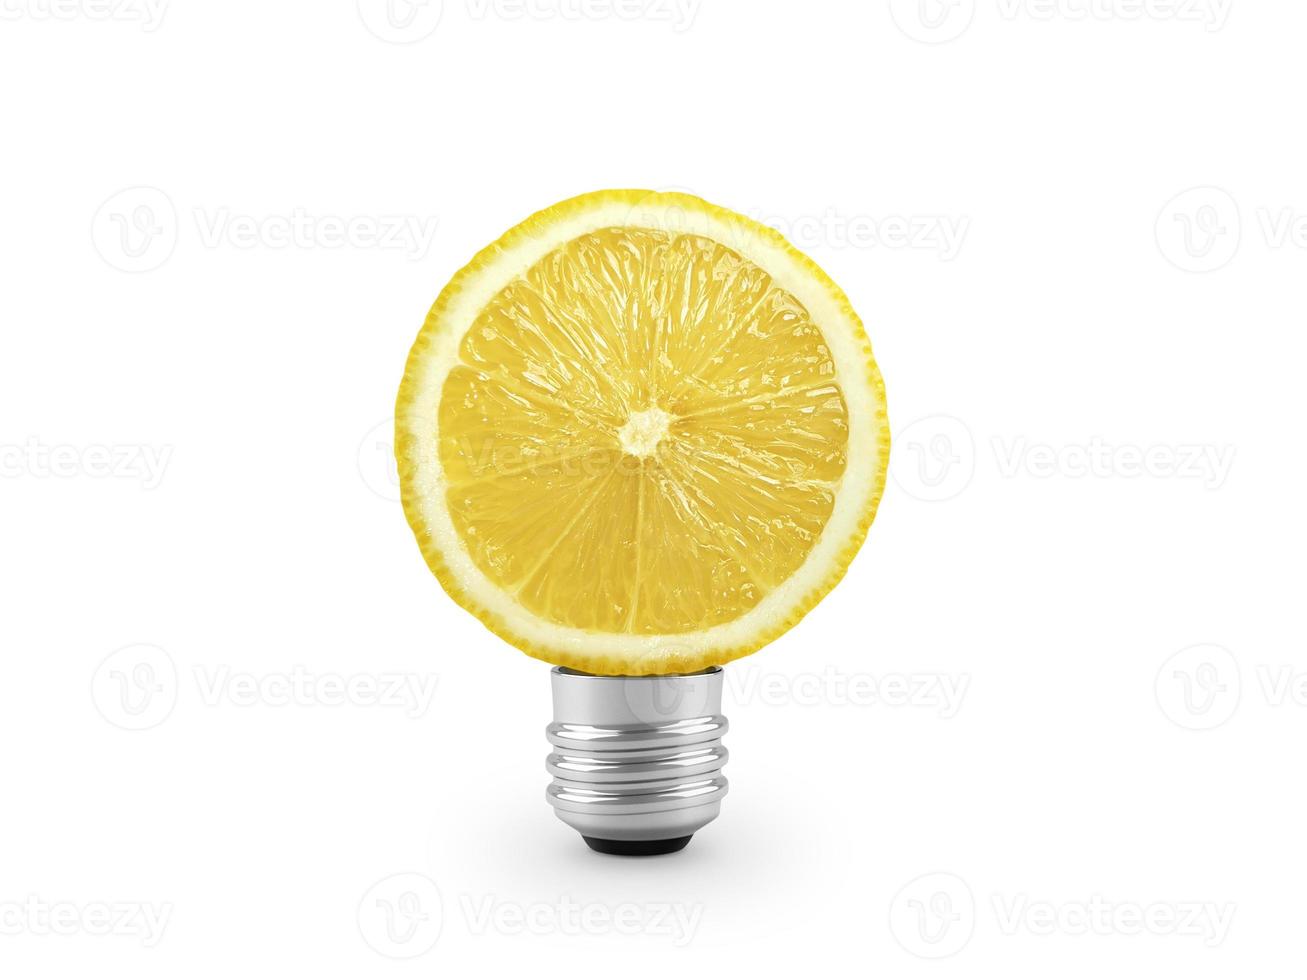 bombilla de luz de limón amarillo sobre fondo blanco. concepto de salud y belleza foto